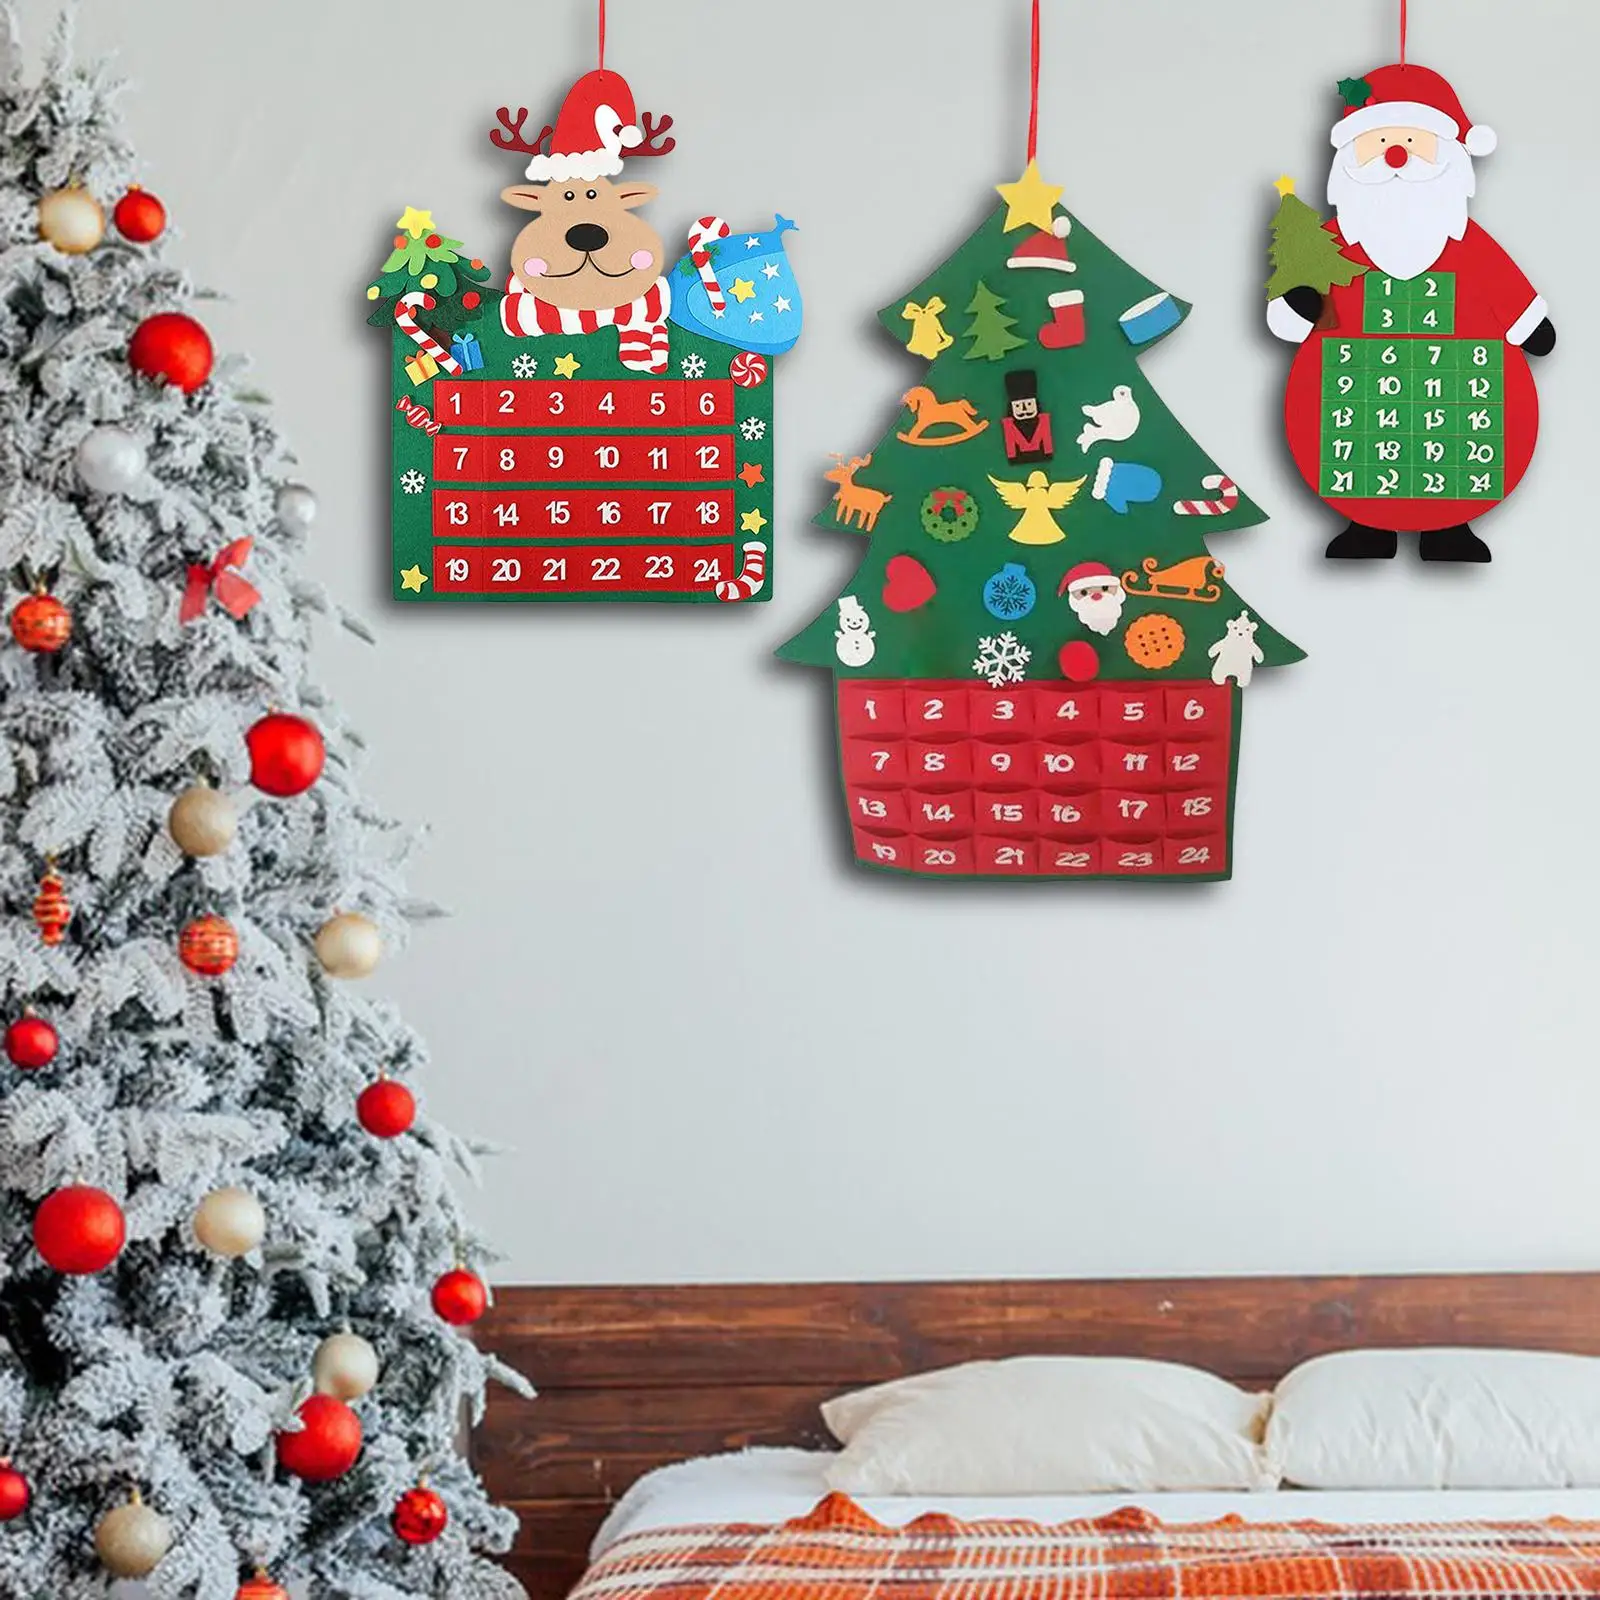 DIY Felt Advent Calendar with 24 Days Pockets Felt for Office Gift Party